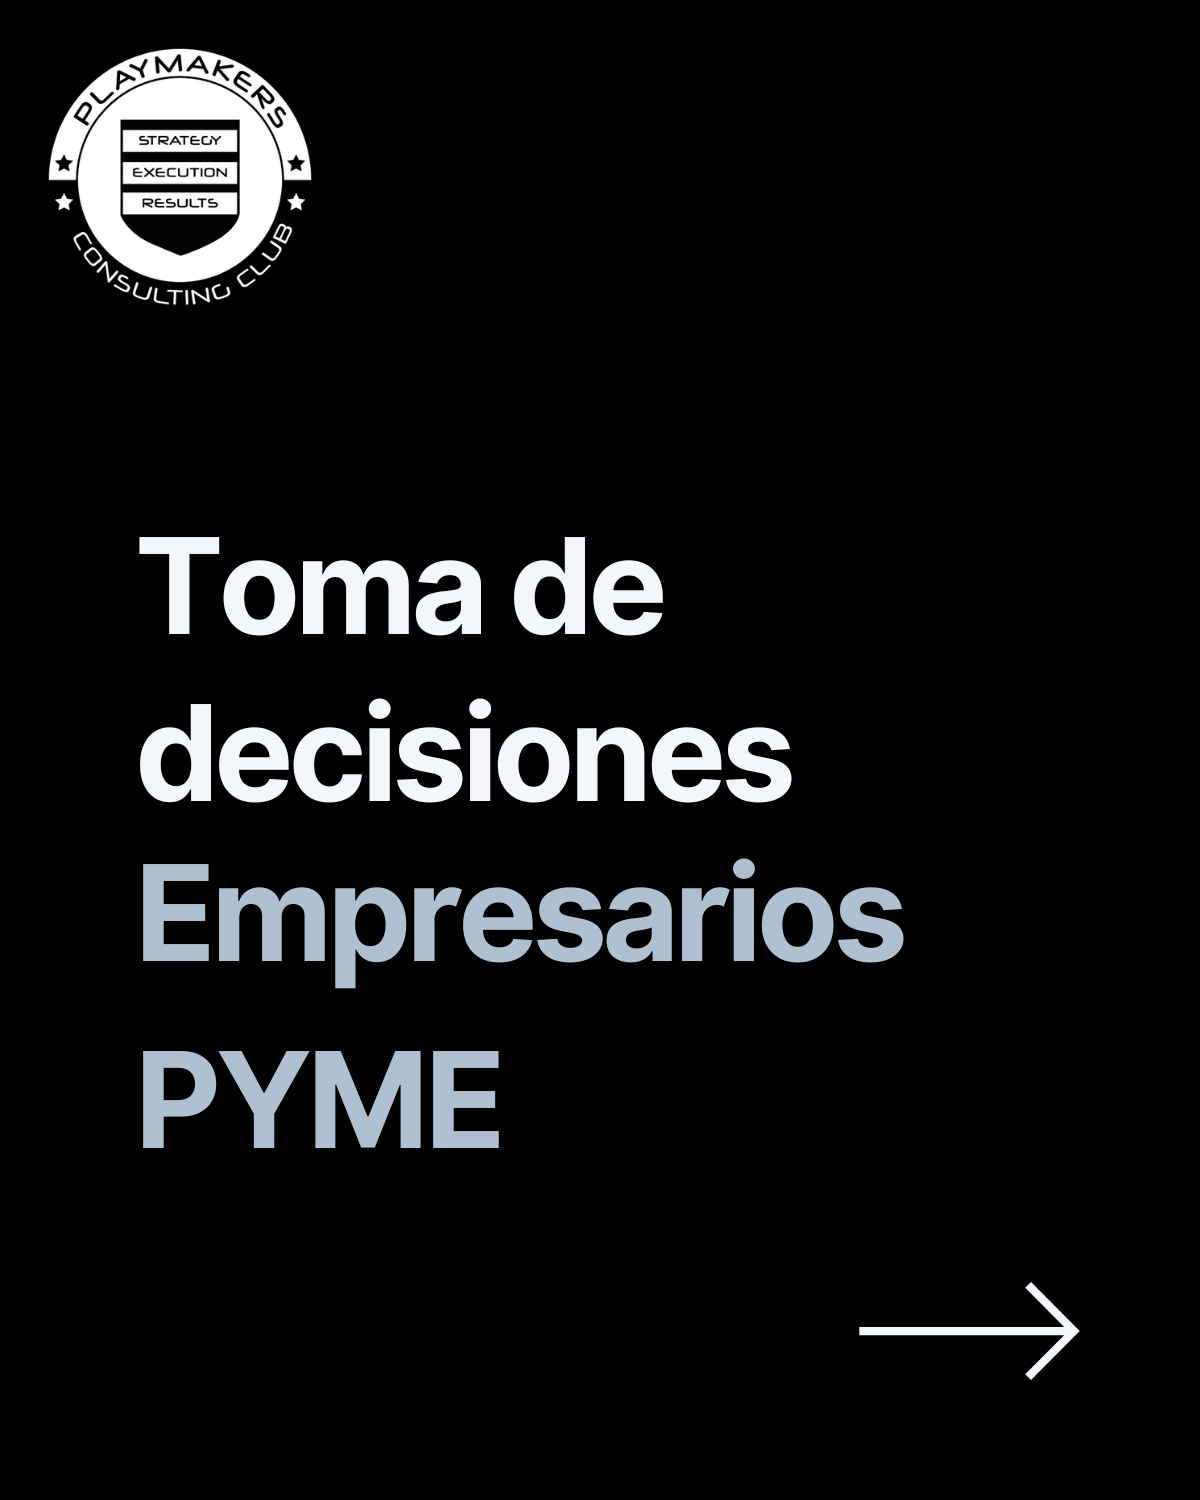 Toma de decisiones para empresarios pyme en España